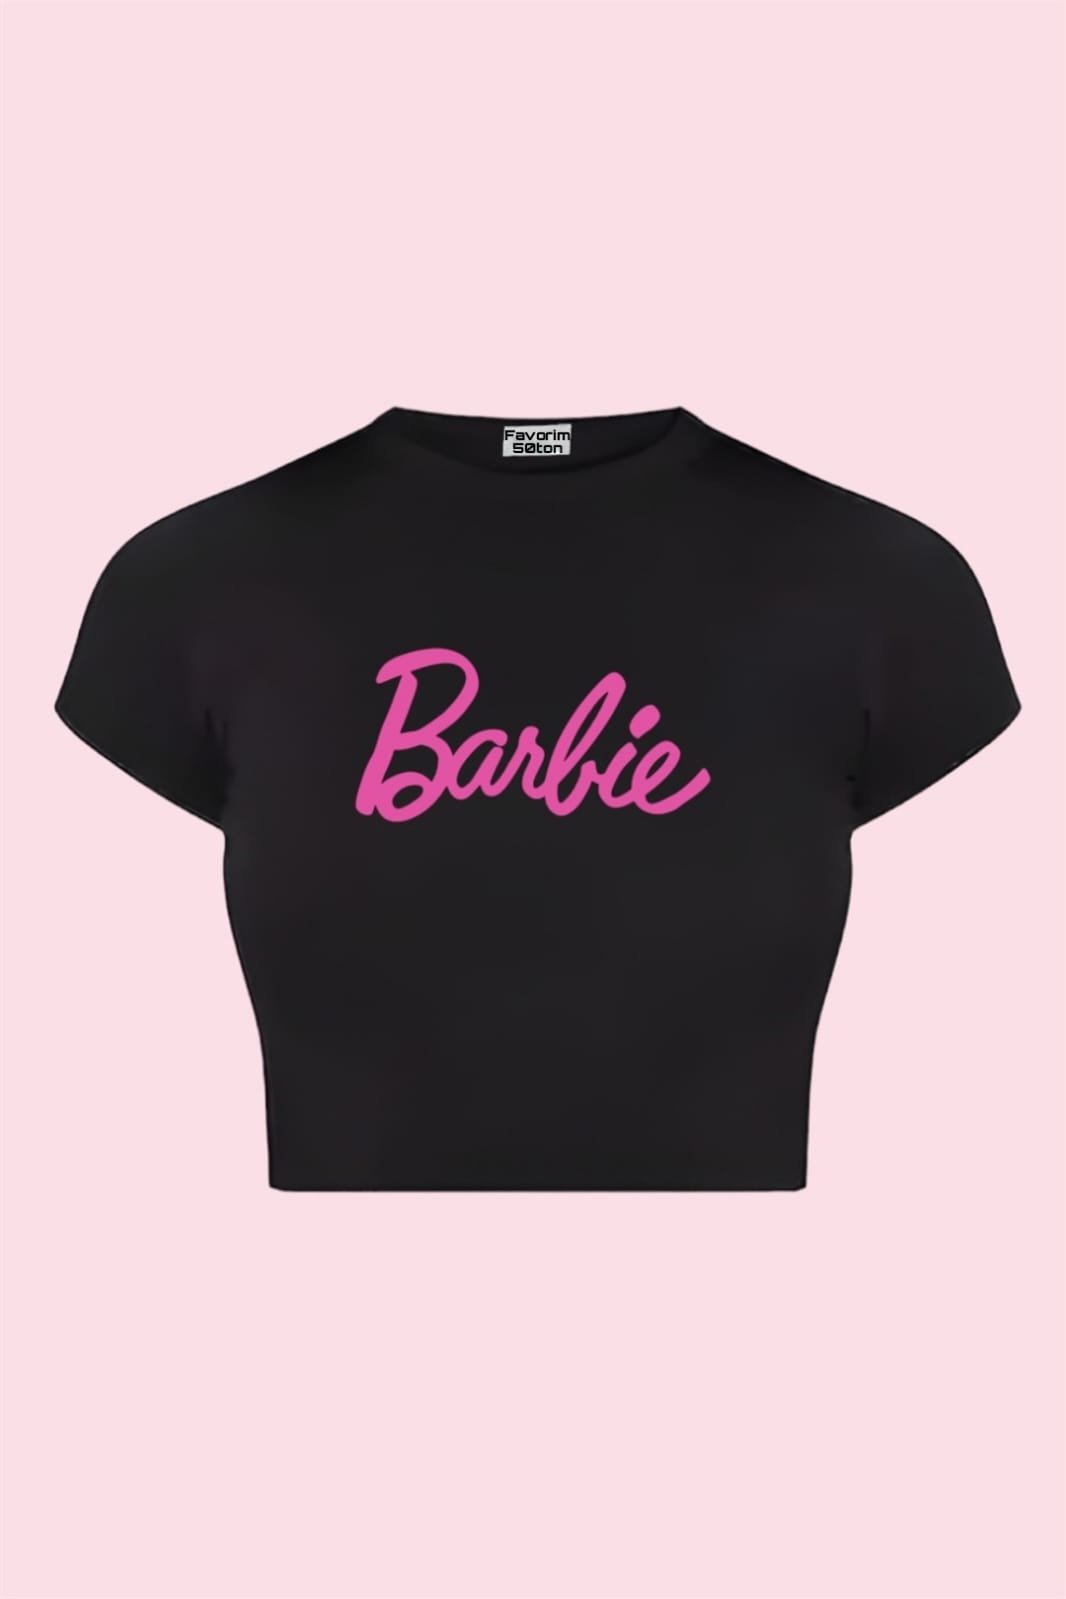 Barbie Black Crop